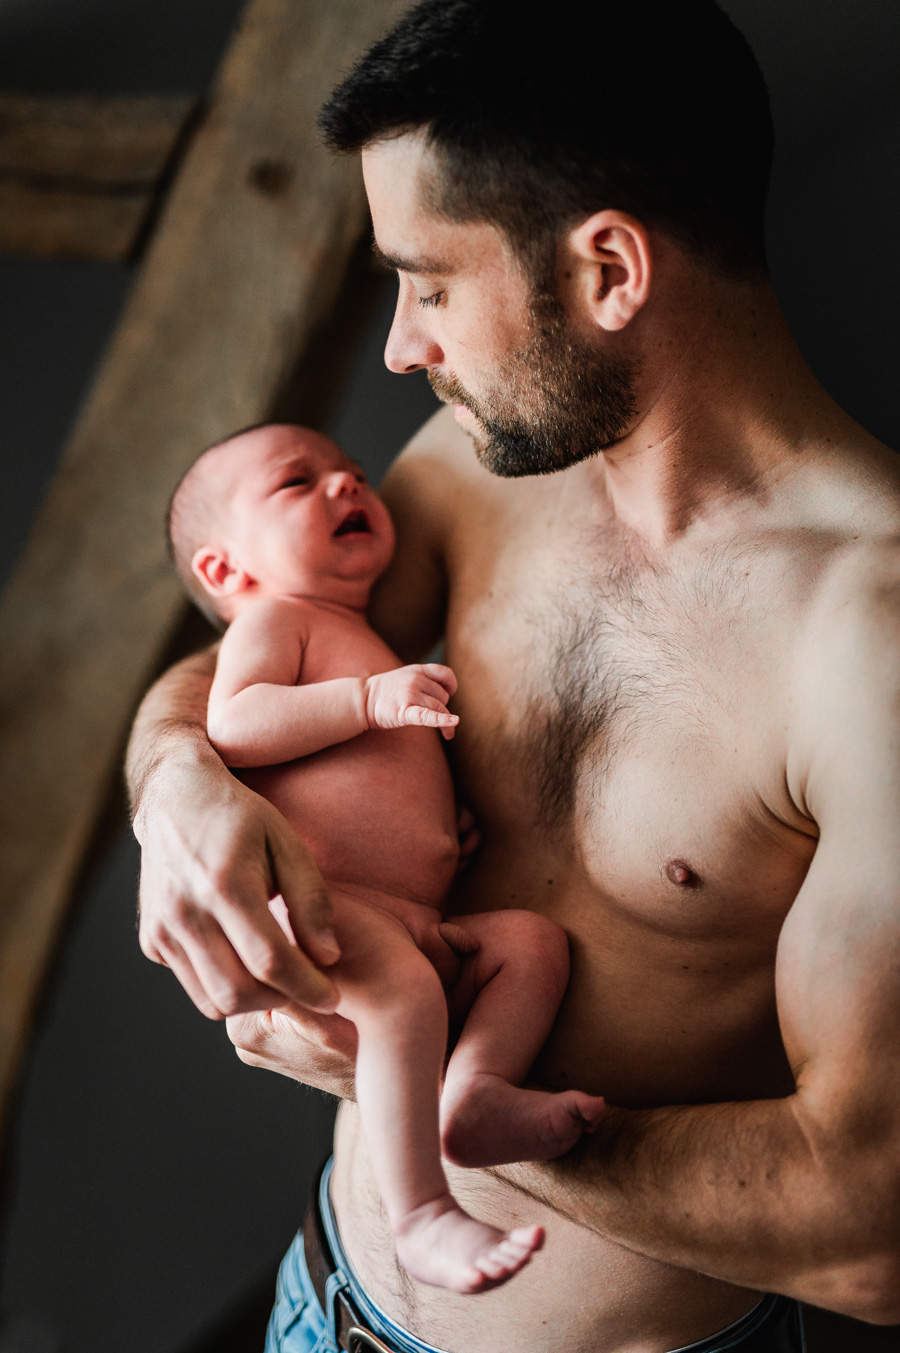 séance photo avec un bébé à saumur jean-christophe coutand-meheut